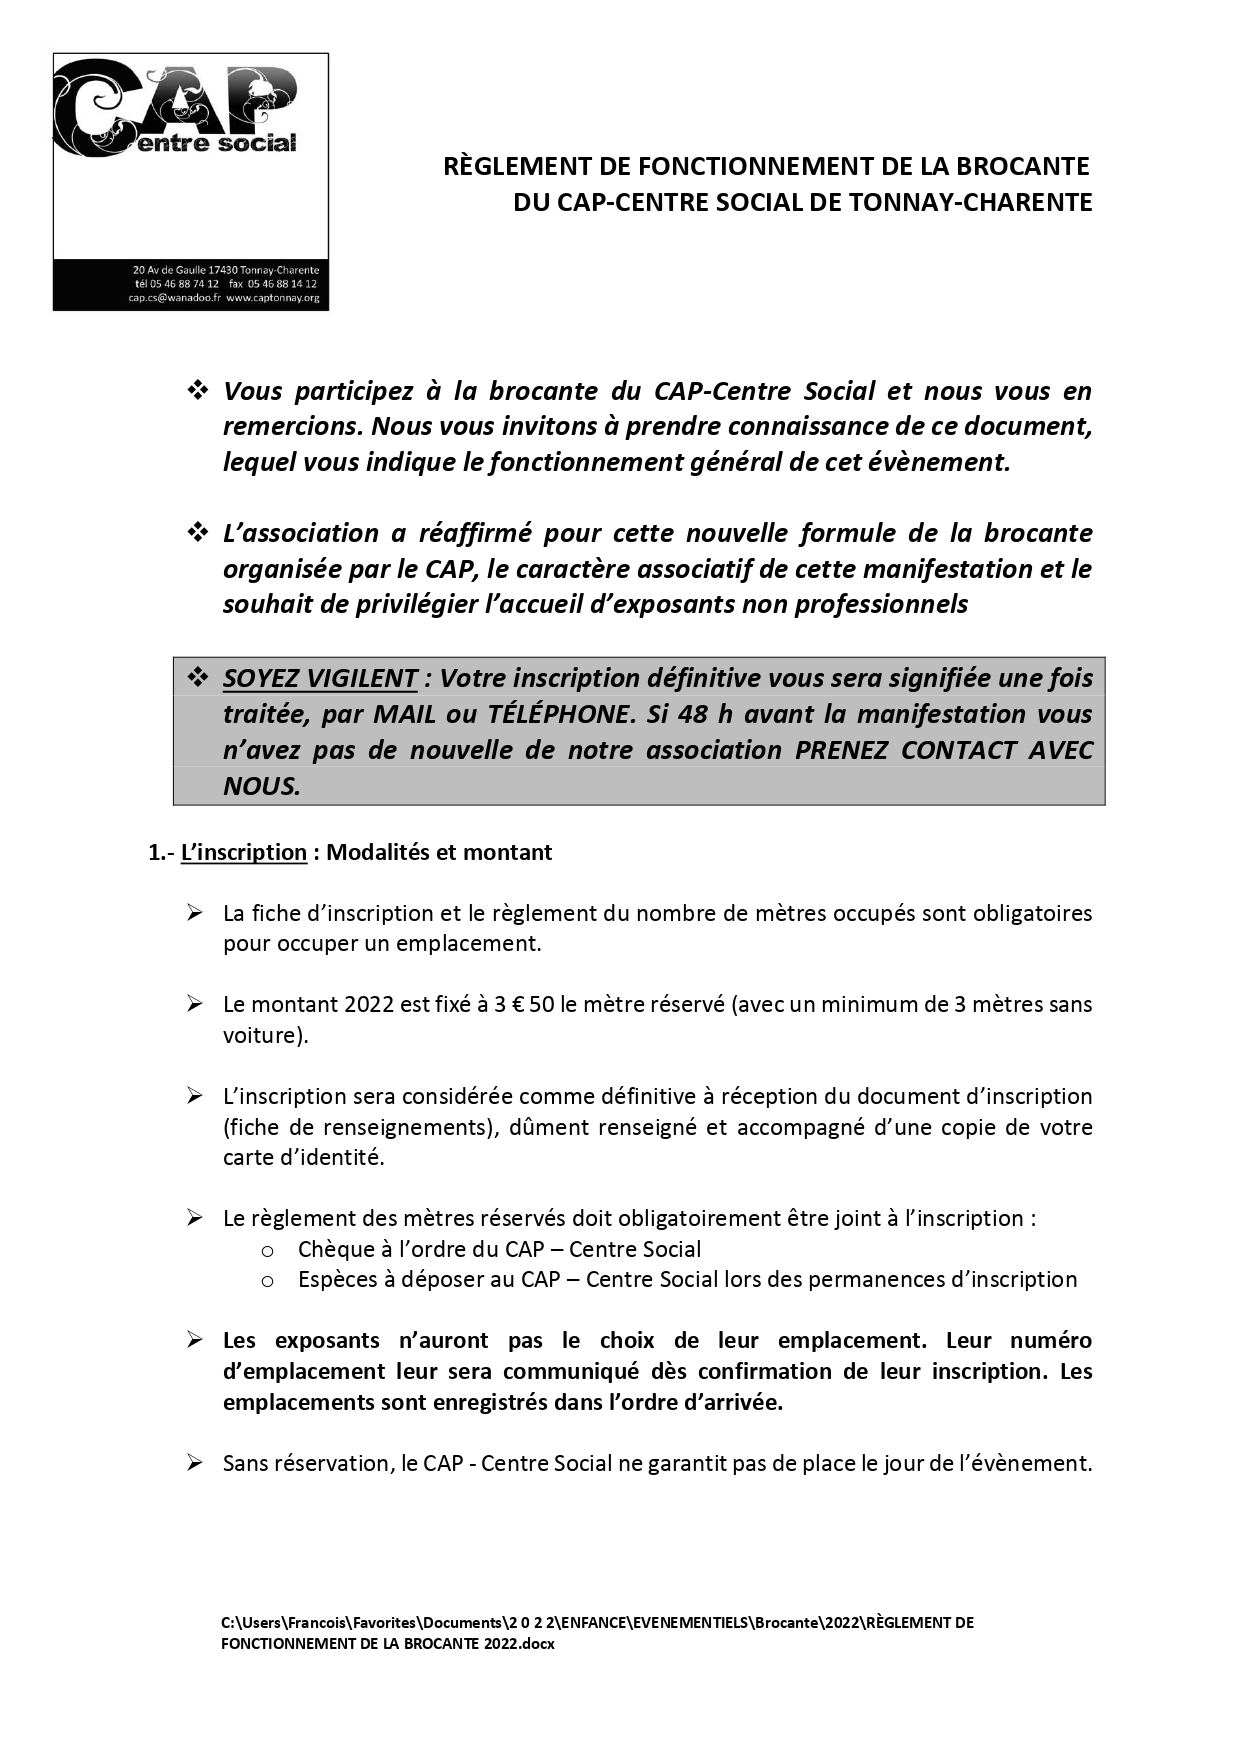 RÈGLEMENT DE FONCTIONNEMENT DE LA BROCANTE 2022 page 0001